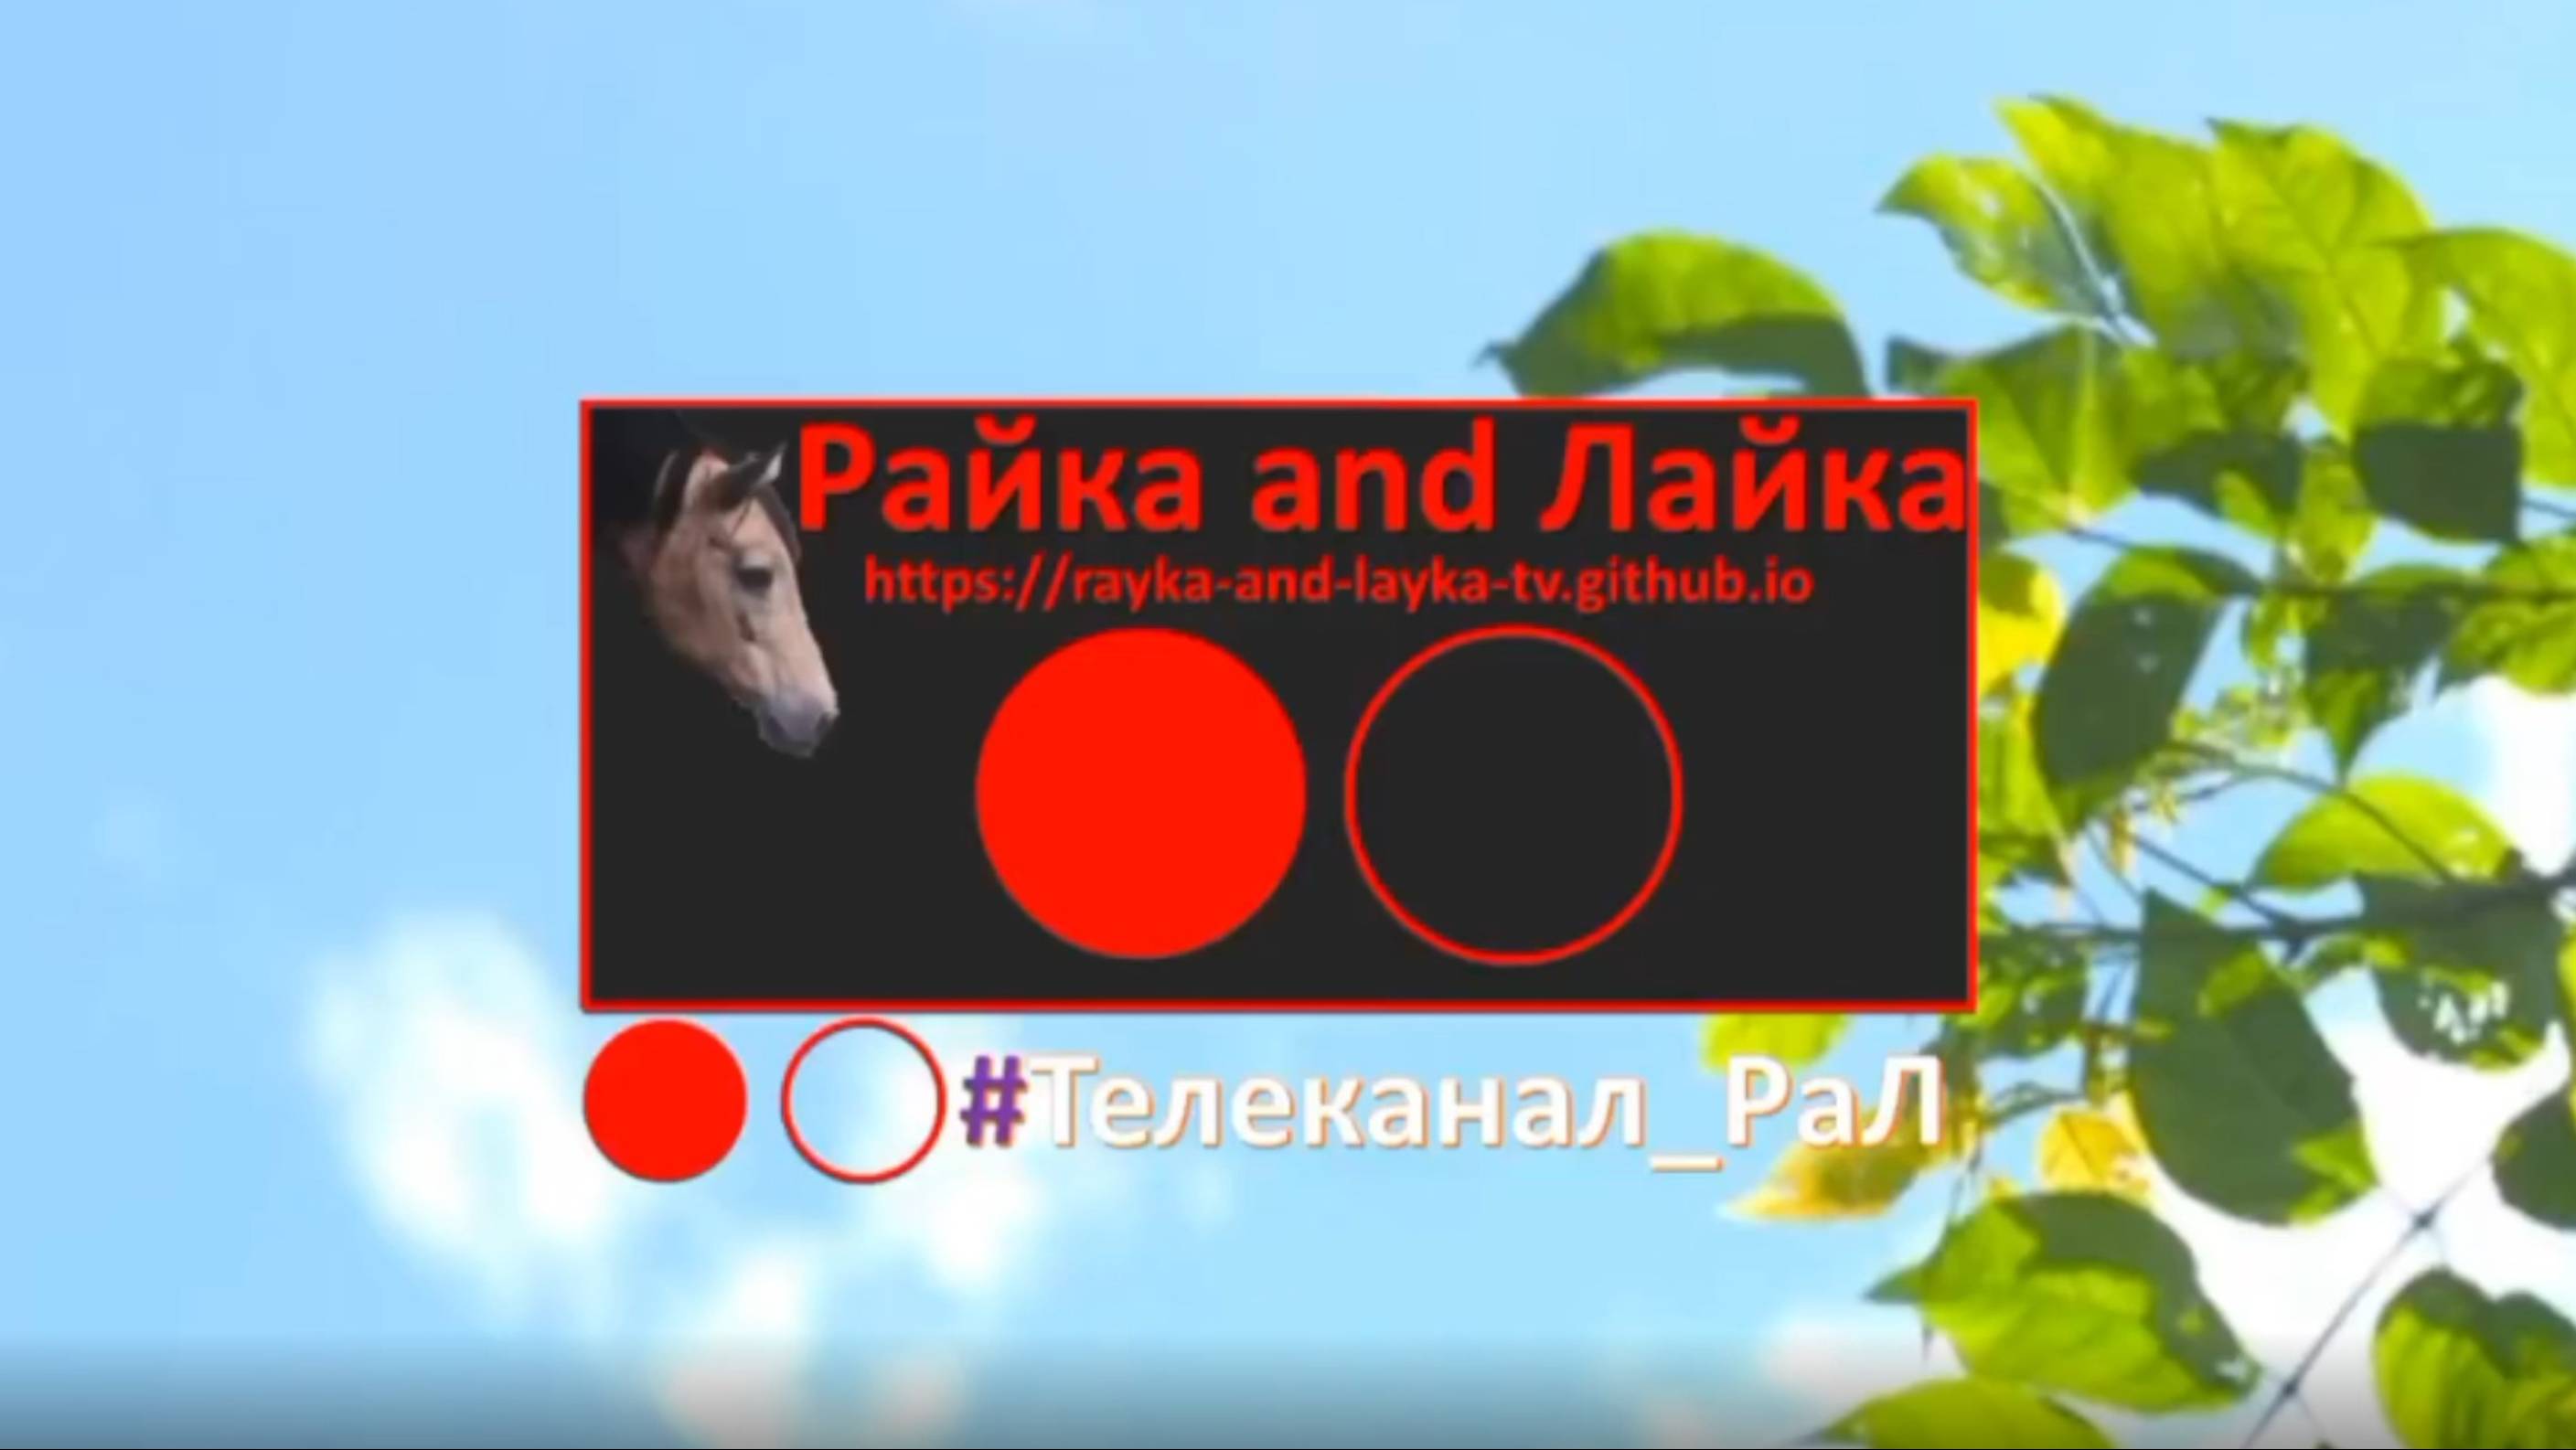 Прямой эфир интернет-телеканала "Райка and Лайка"